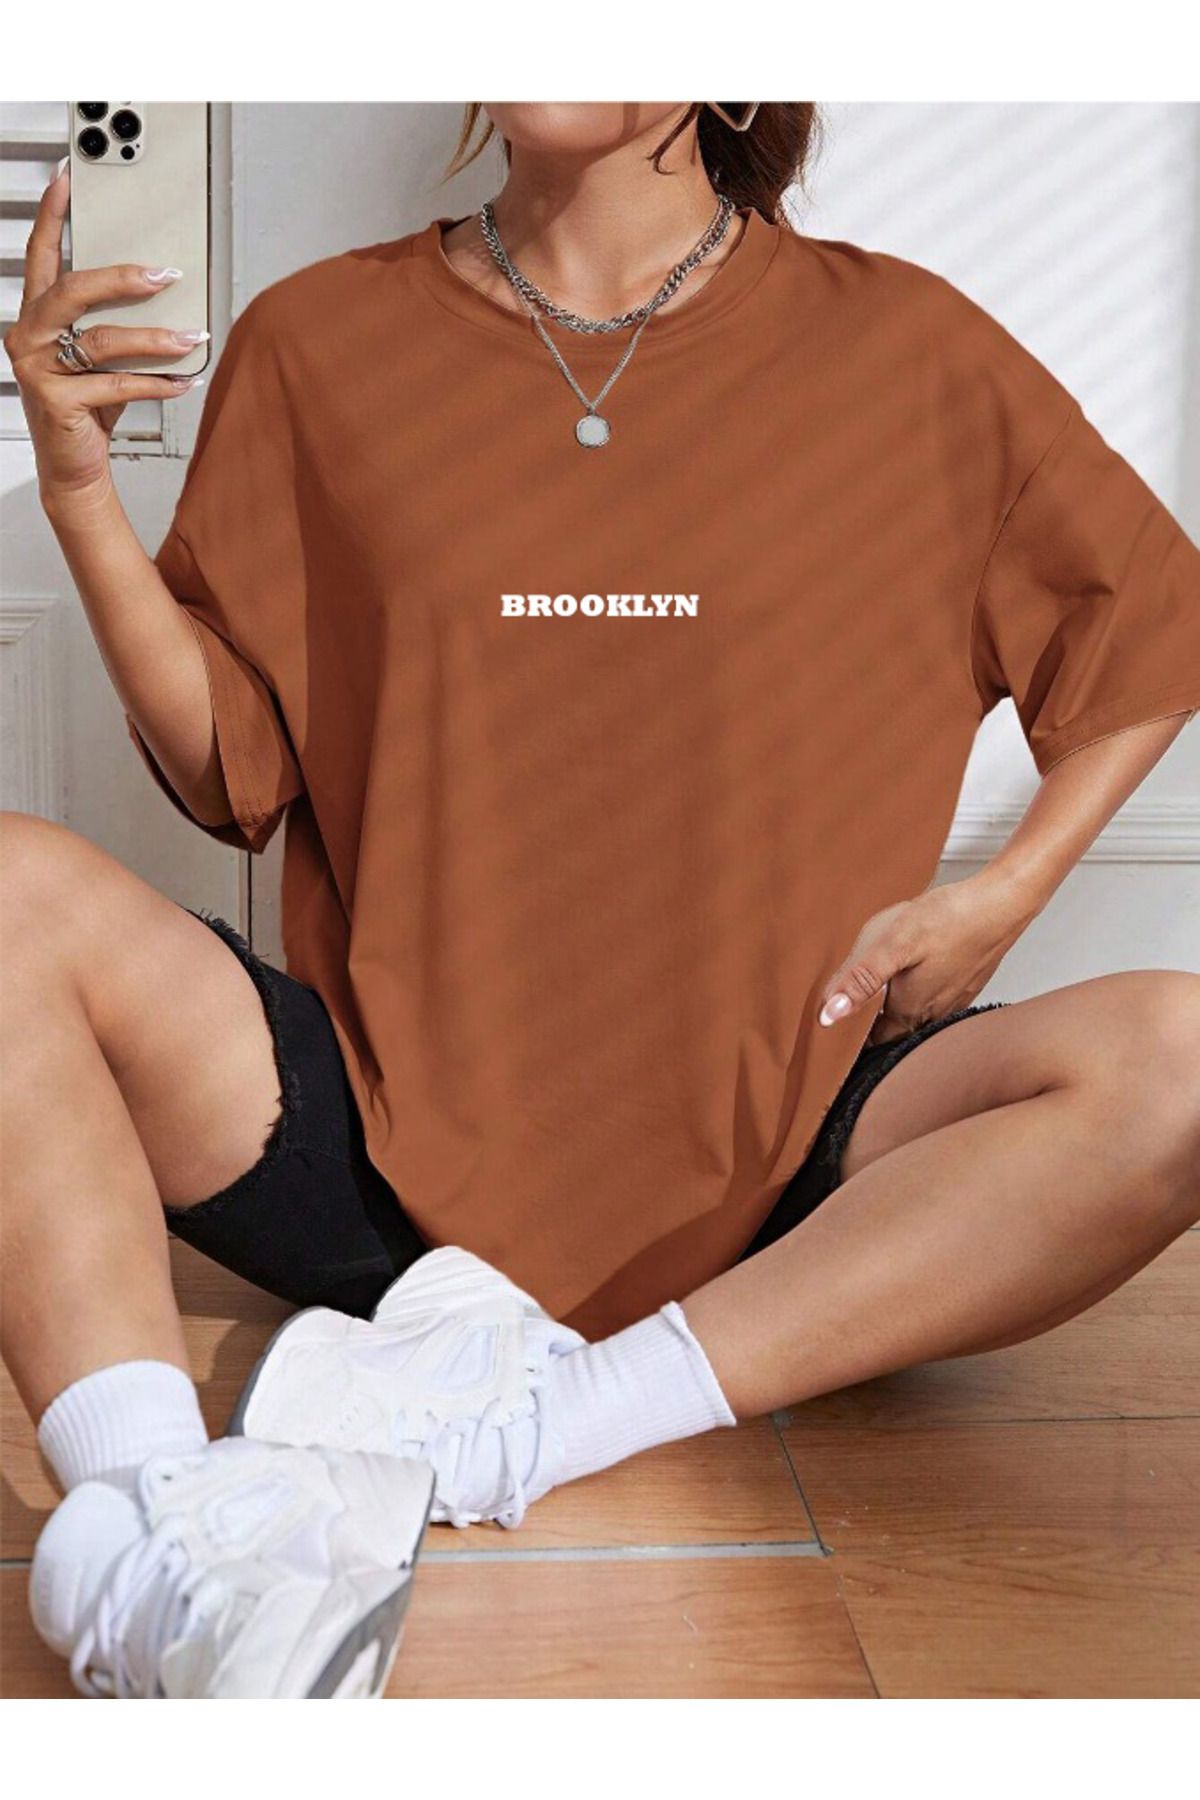 ALEGORİ Unisex Kadın/Erkek BROOKLYN Renkli Özel Baskılı Oversize Pamuk Penye T-Shirt